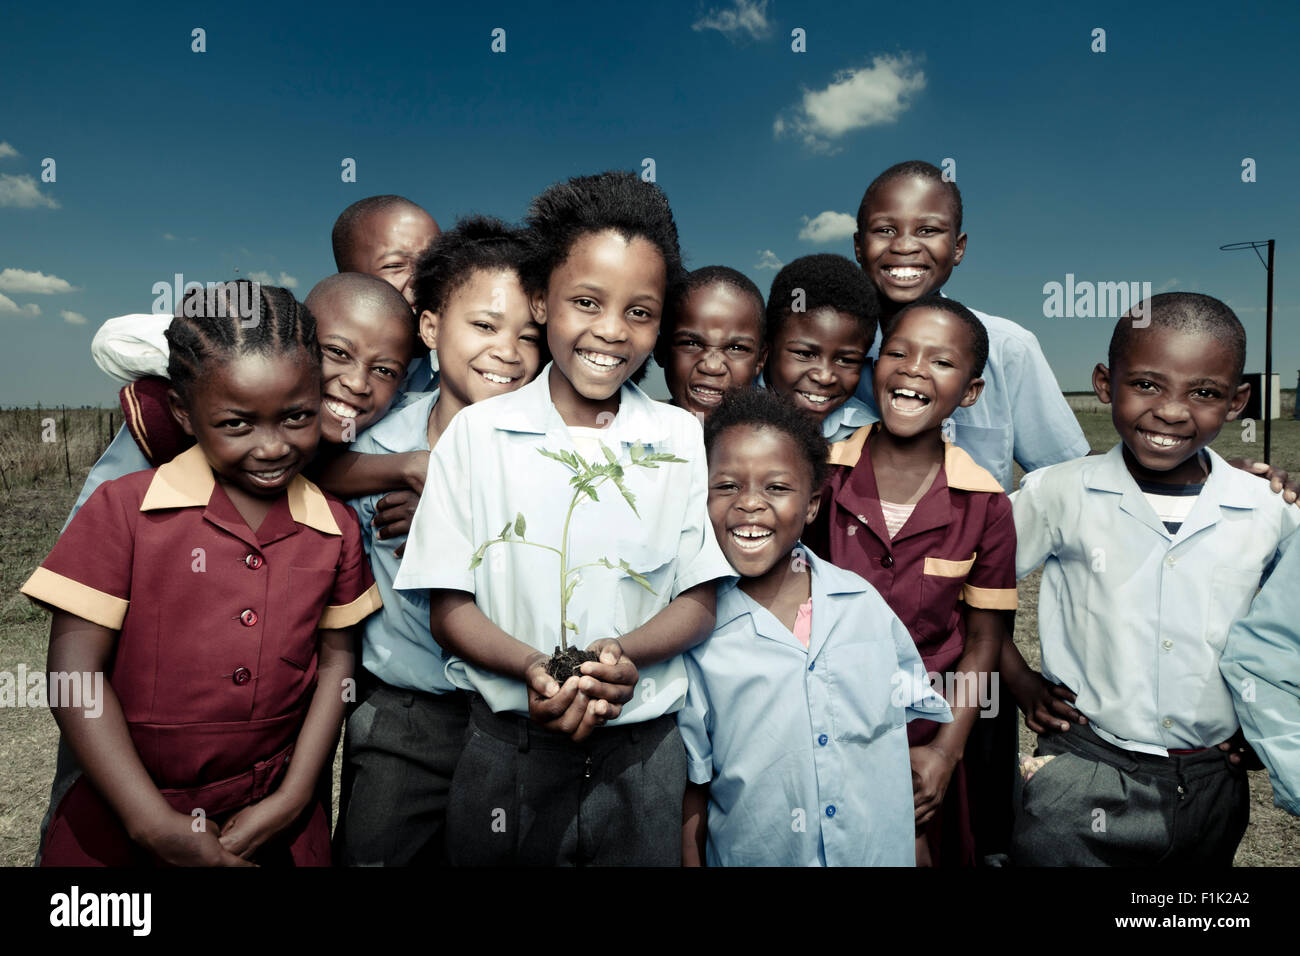 Groupe d'enfants de l'école africaine à l'extérieur, smiling at camera Banque D'Images